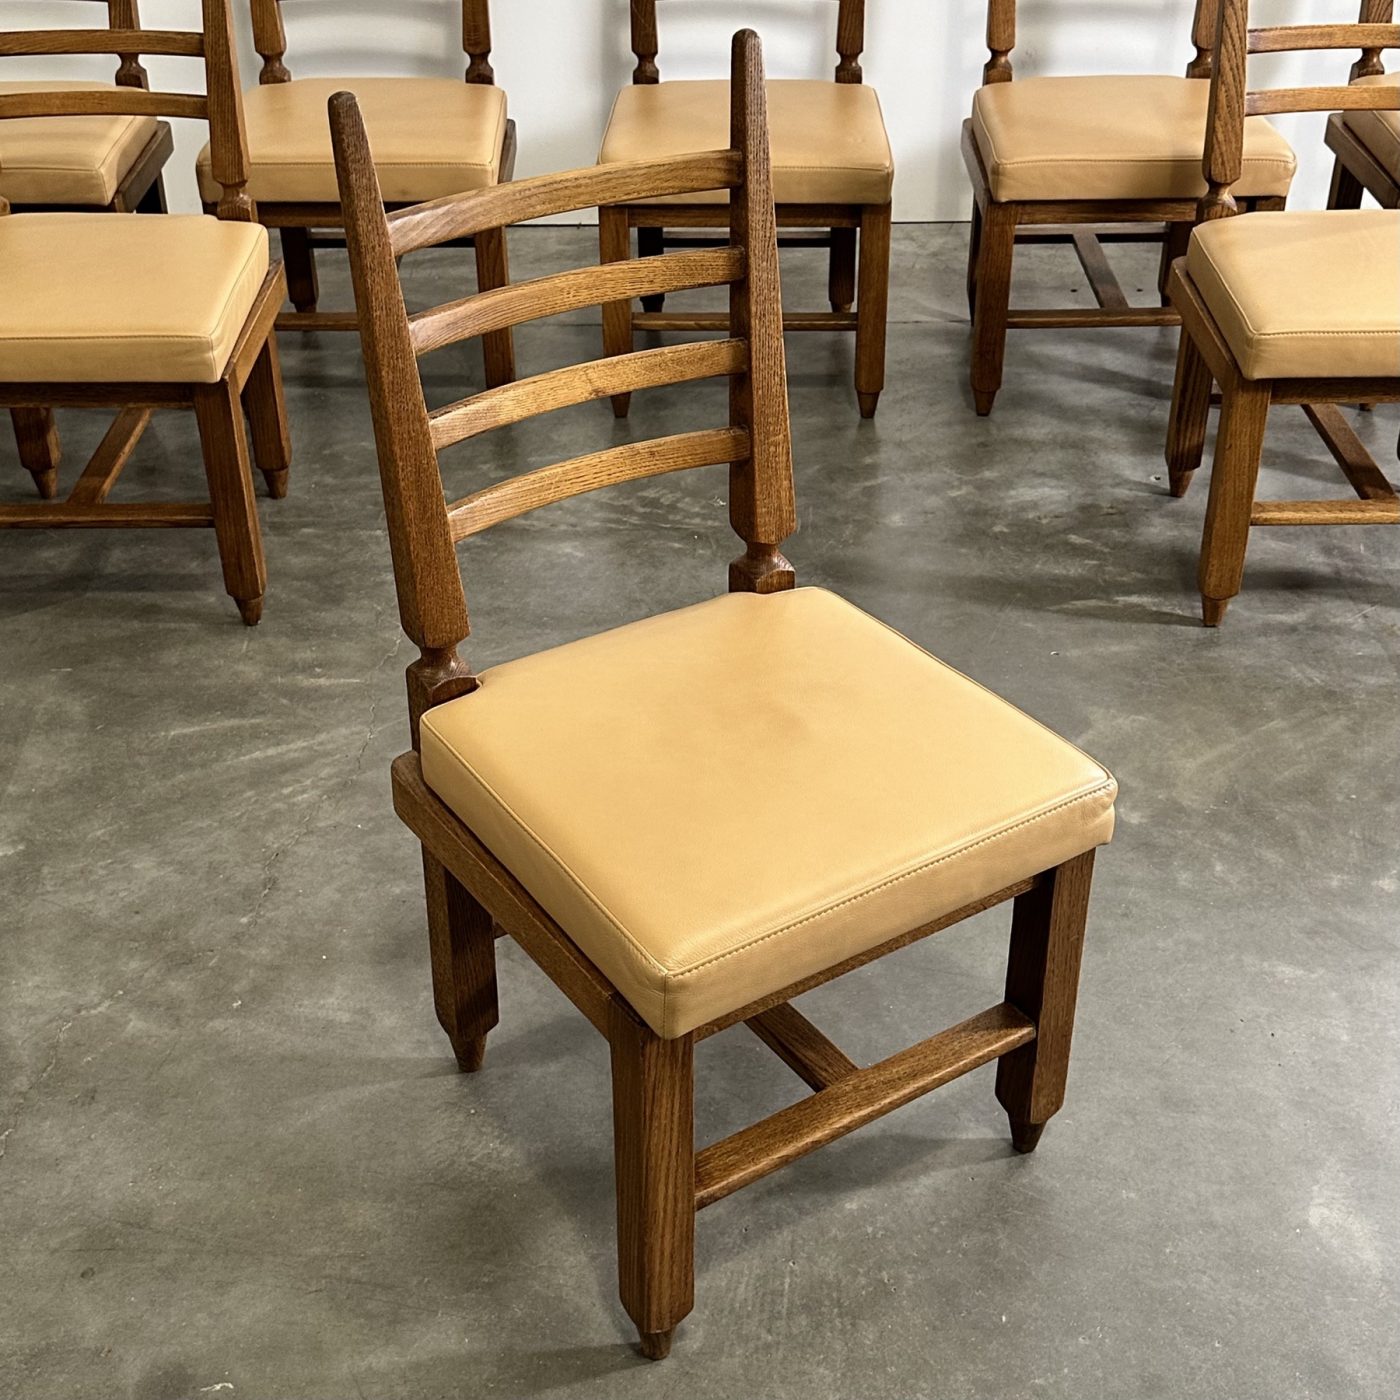 objet-vagabond-guillerme-chairs0006